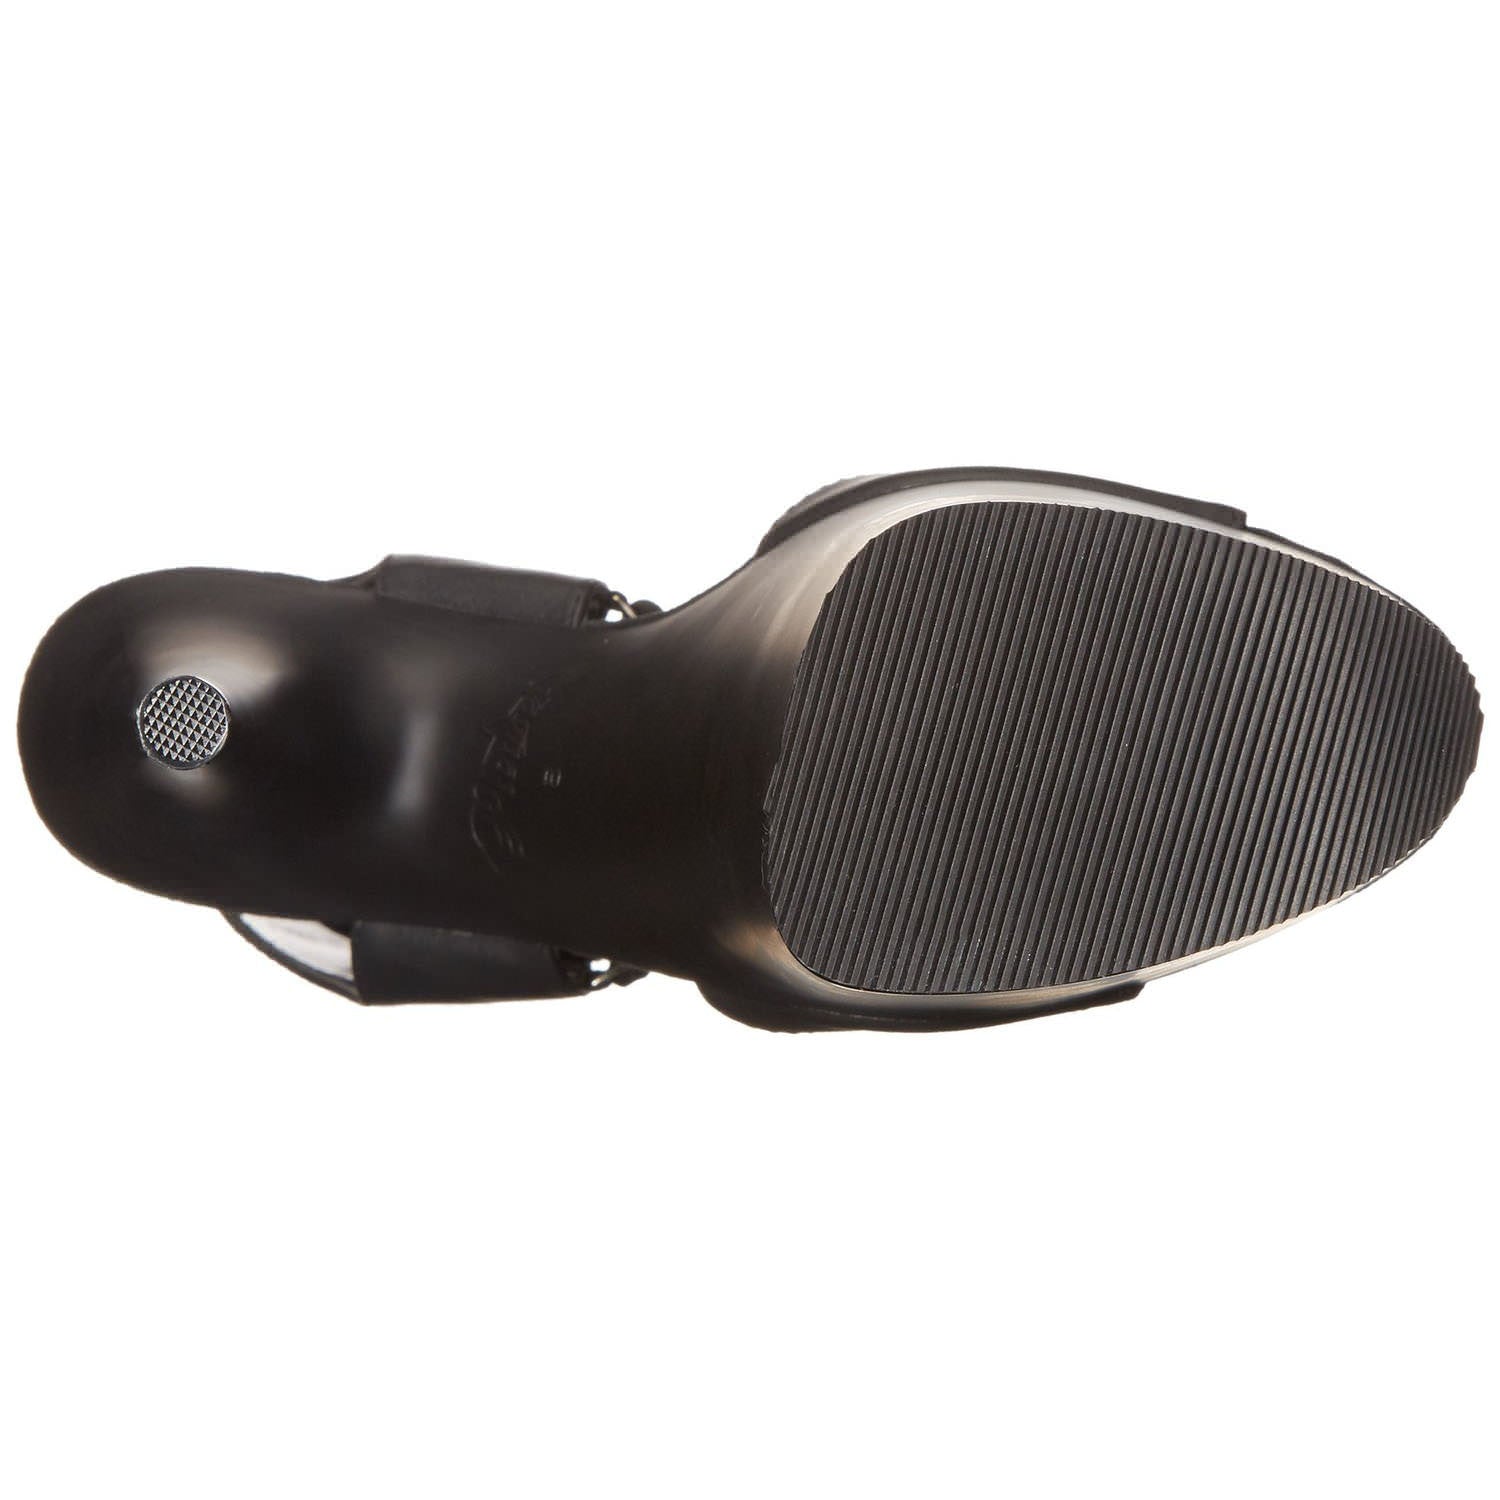 Pleaser FLAMINGO-800-14 Black Leather Sandals - Shoecup.com - 7